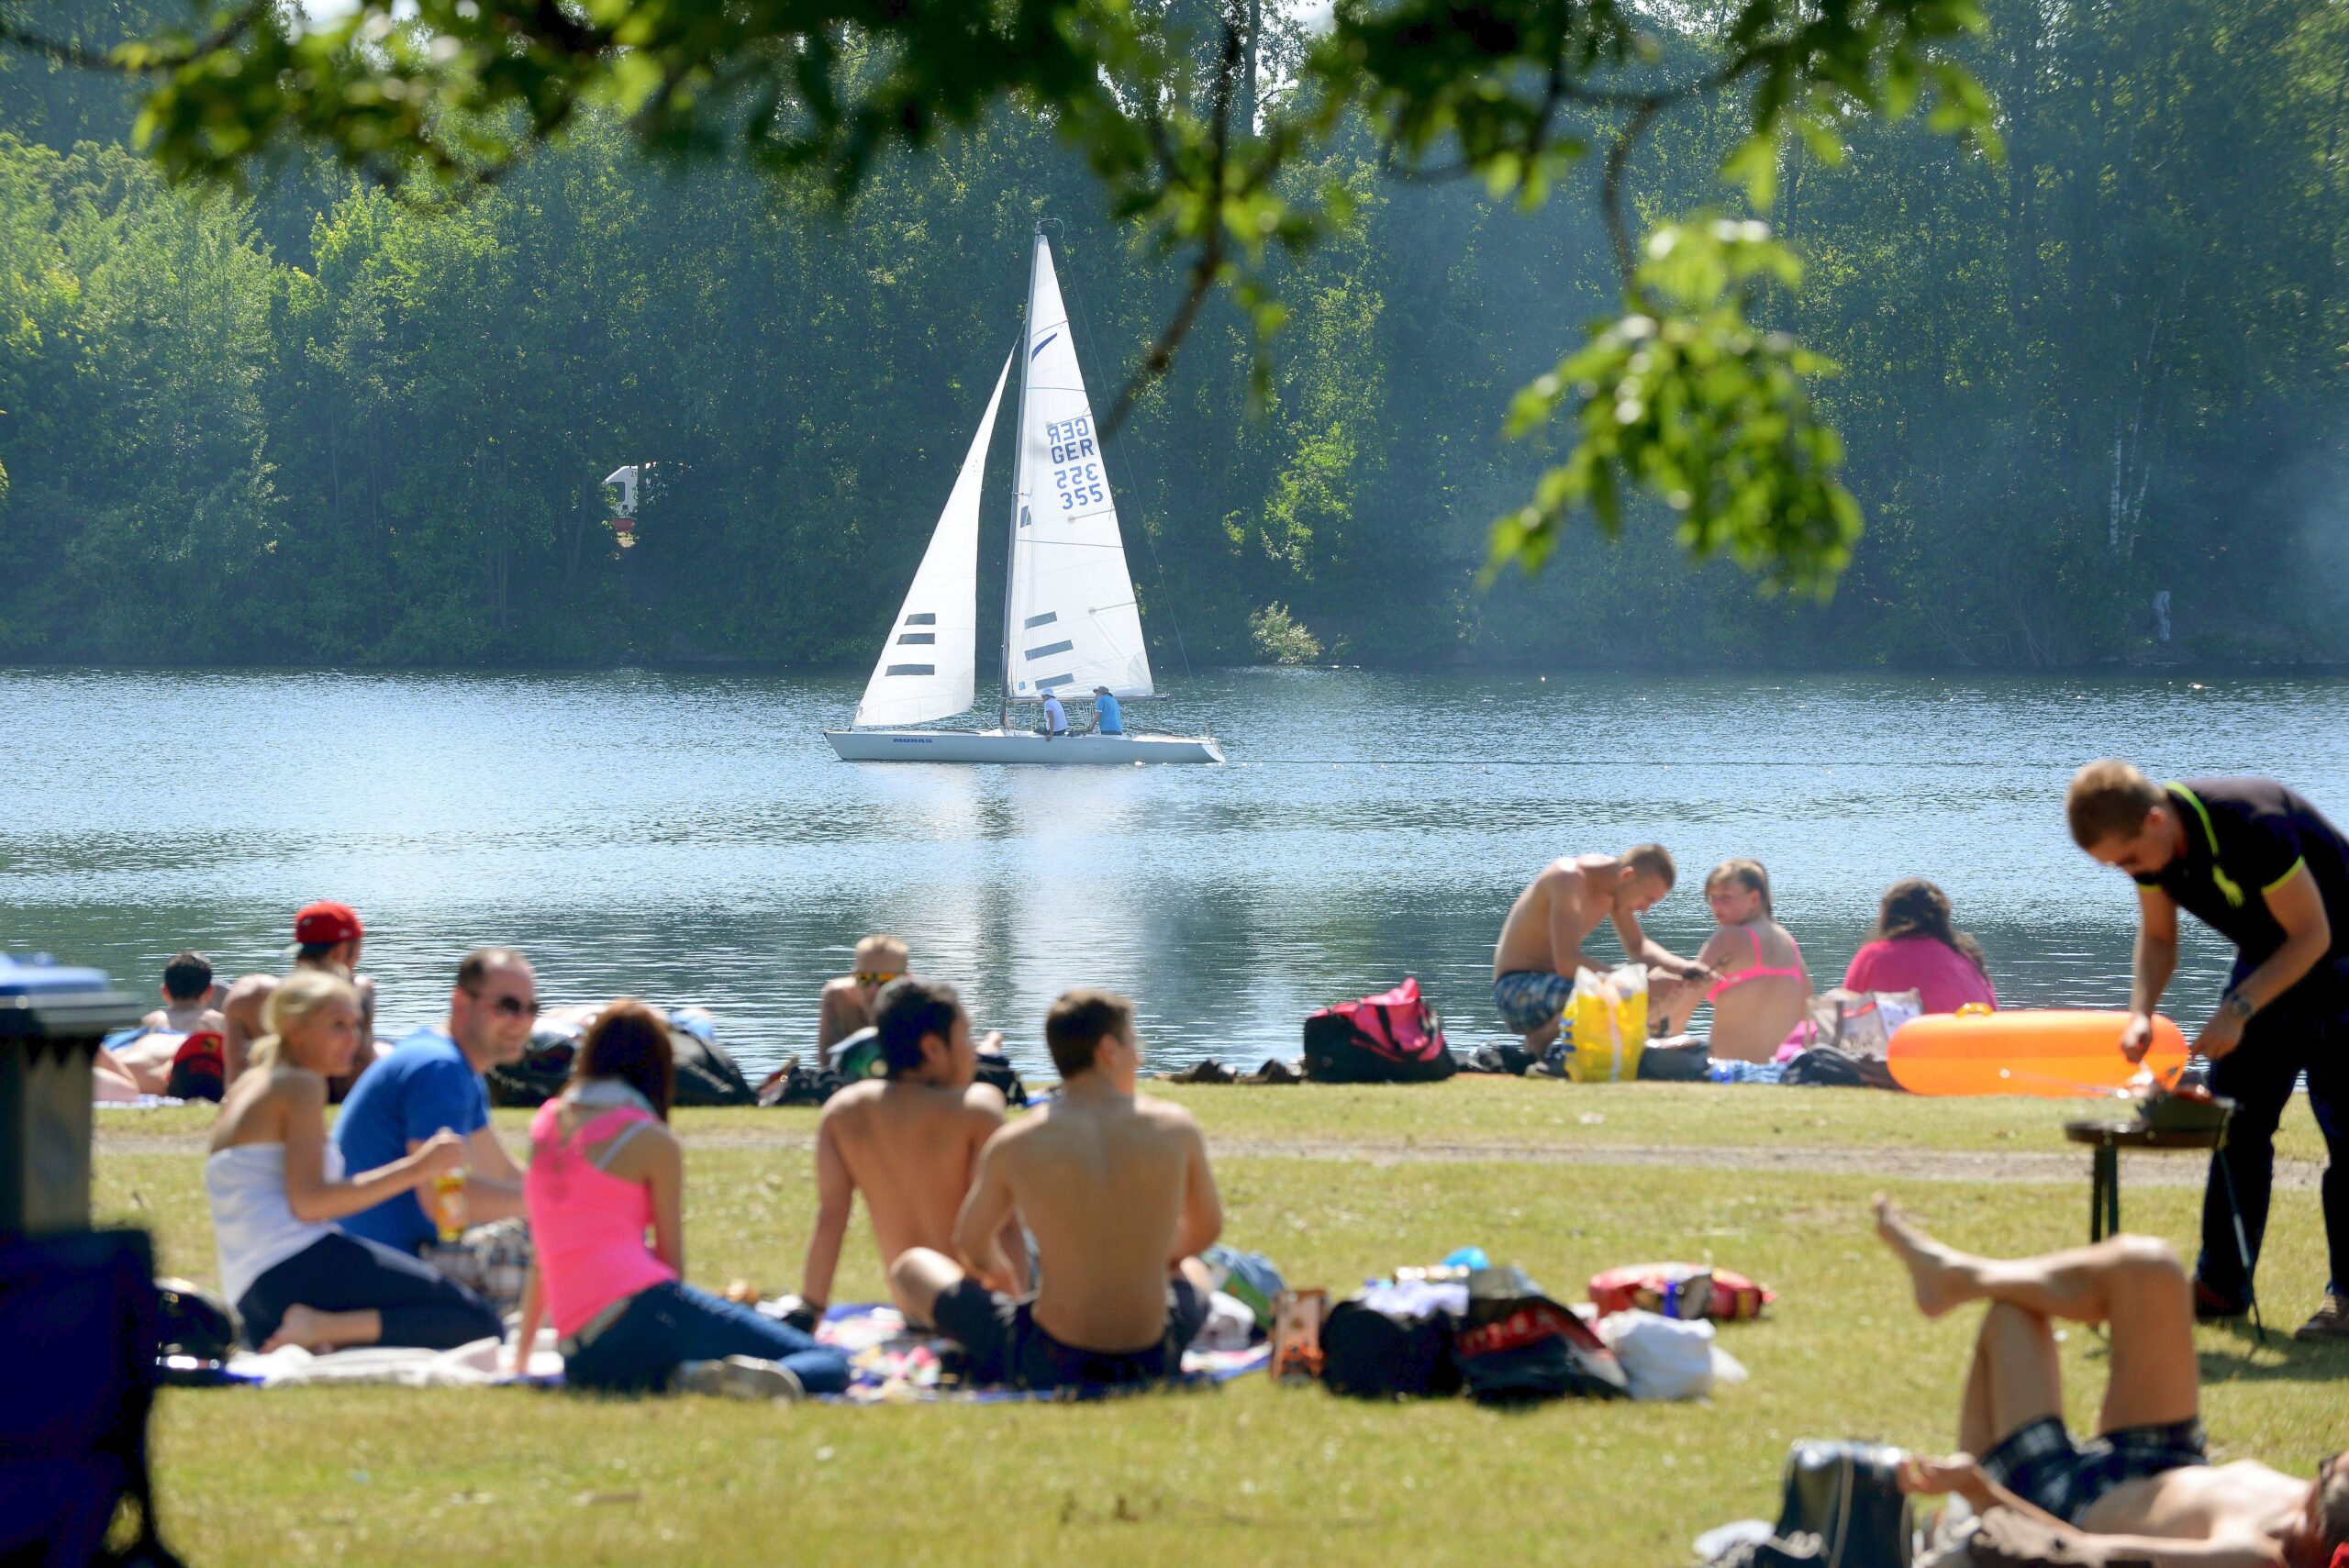 So lässt sich's aushalten: Landauf, landab haben die Menschen am Donnerstag das schöne Wetter genossen. Ob an der Sechs-Seen-Platte in Duisburg...